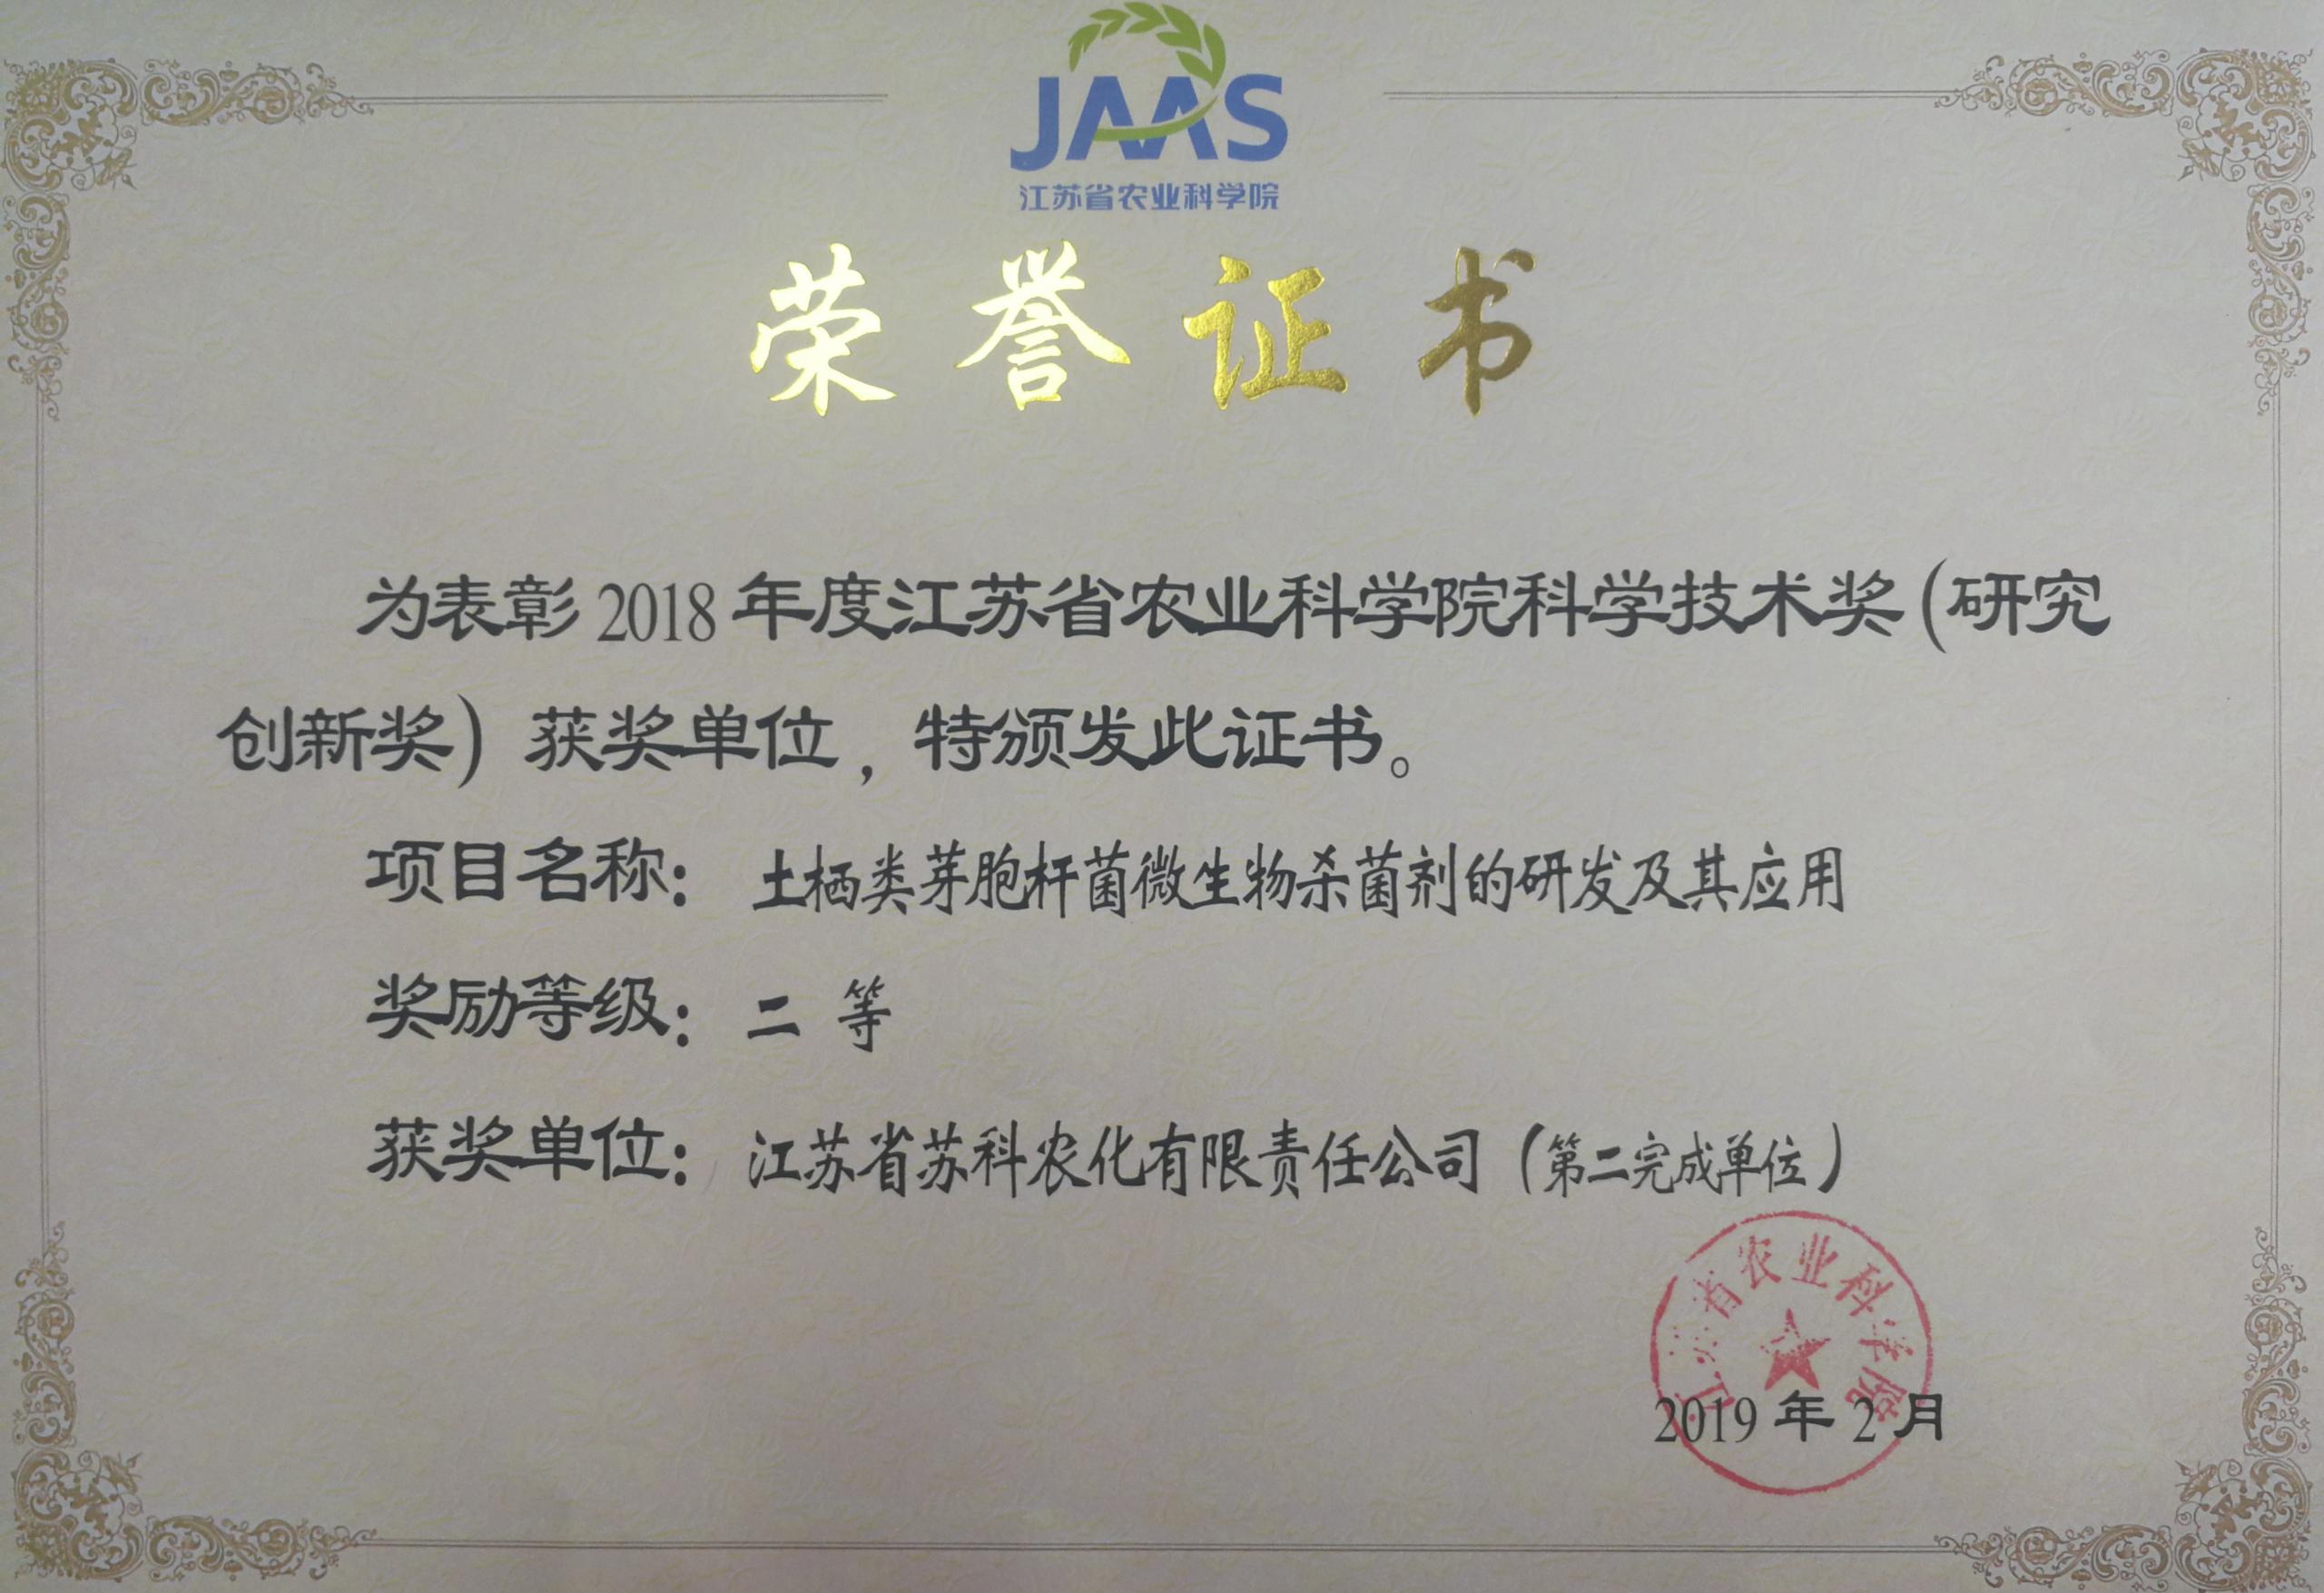 天博电竞(中国)有限公司官网荣获院科学技术二等奖